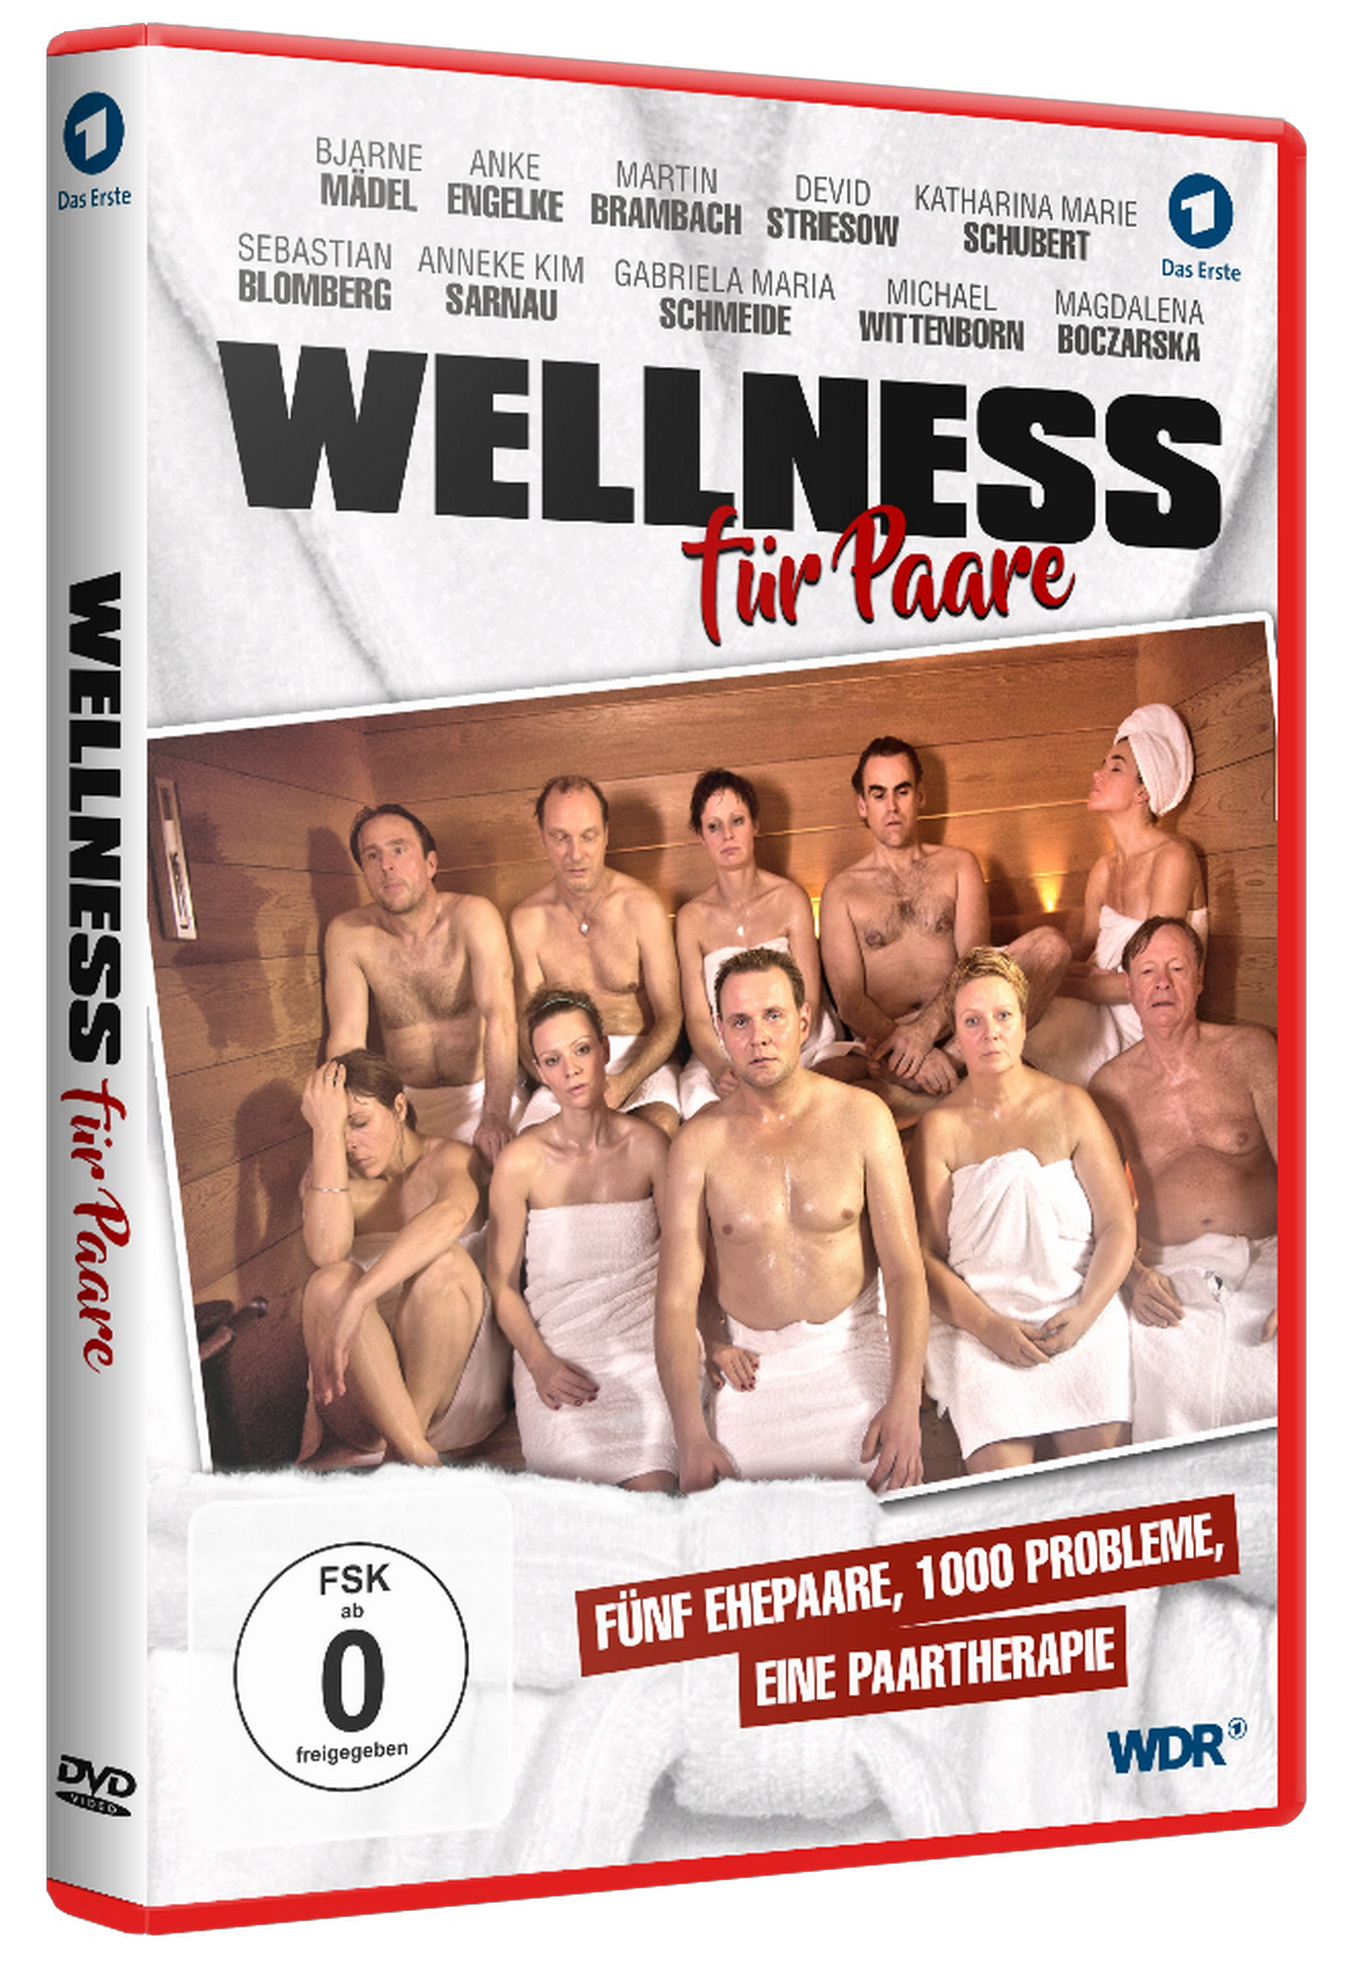 Für Wellness Paare DVD